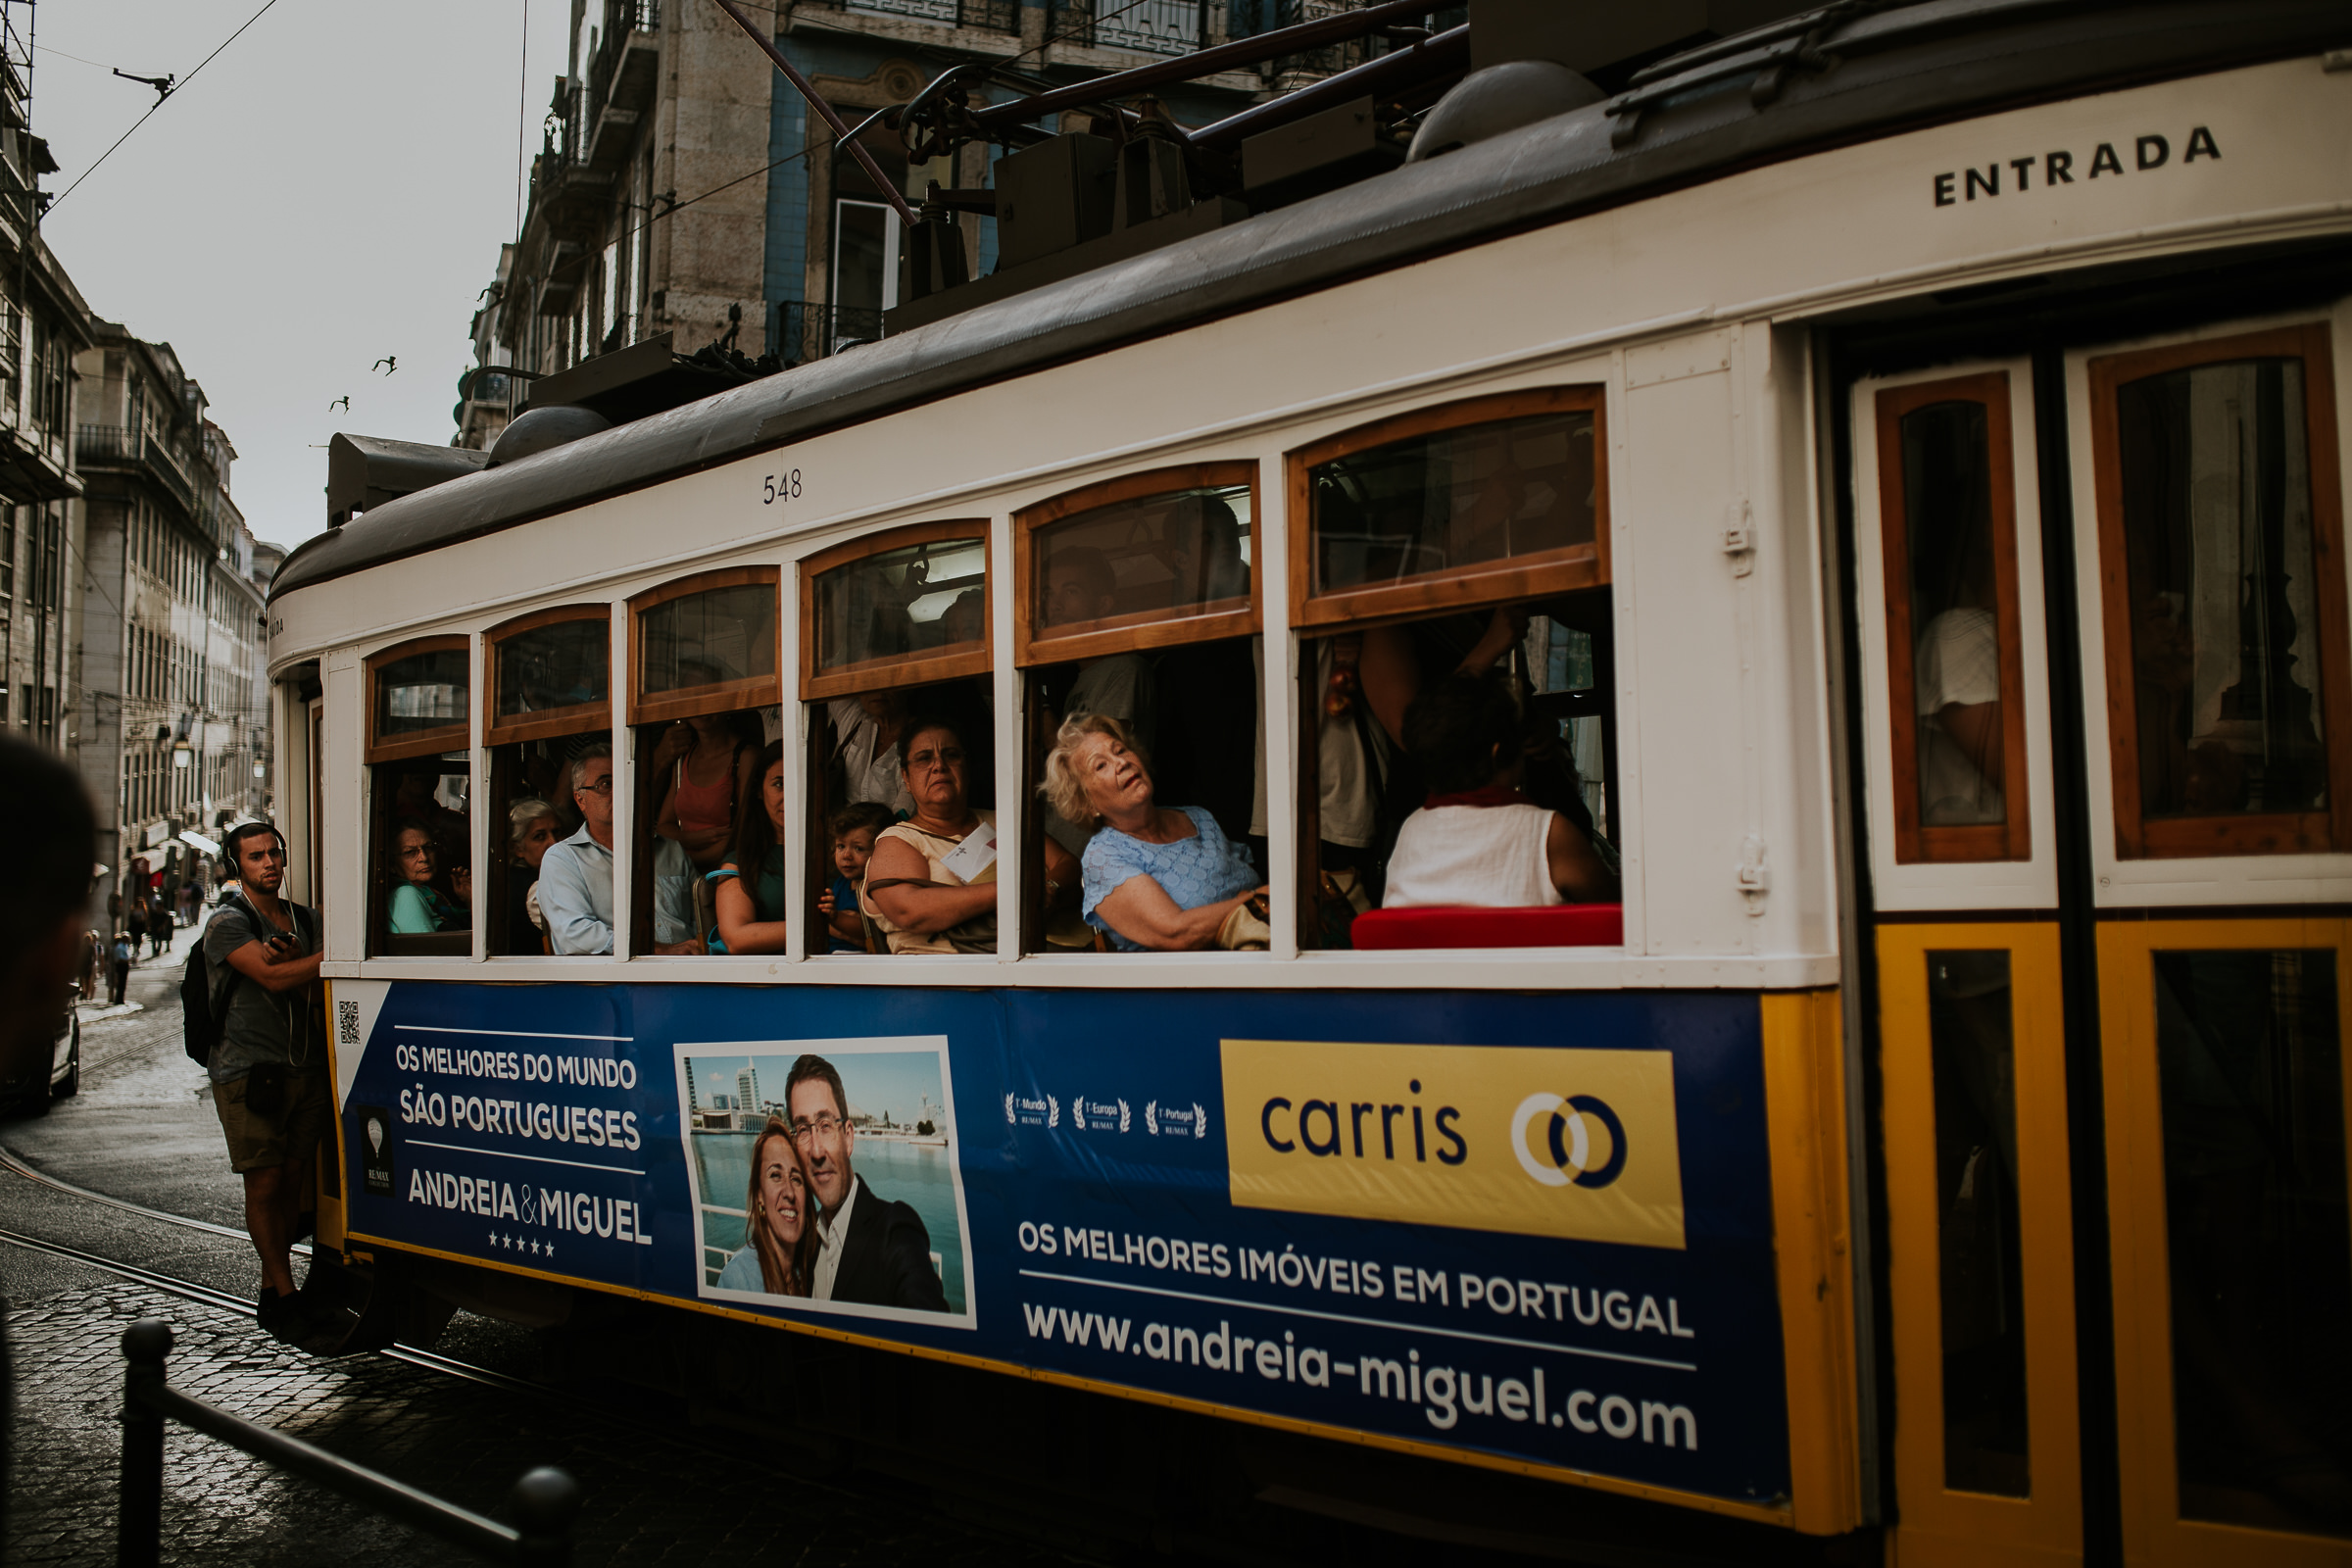 tram full of people in lisbon streets